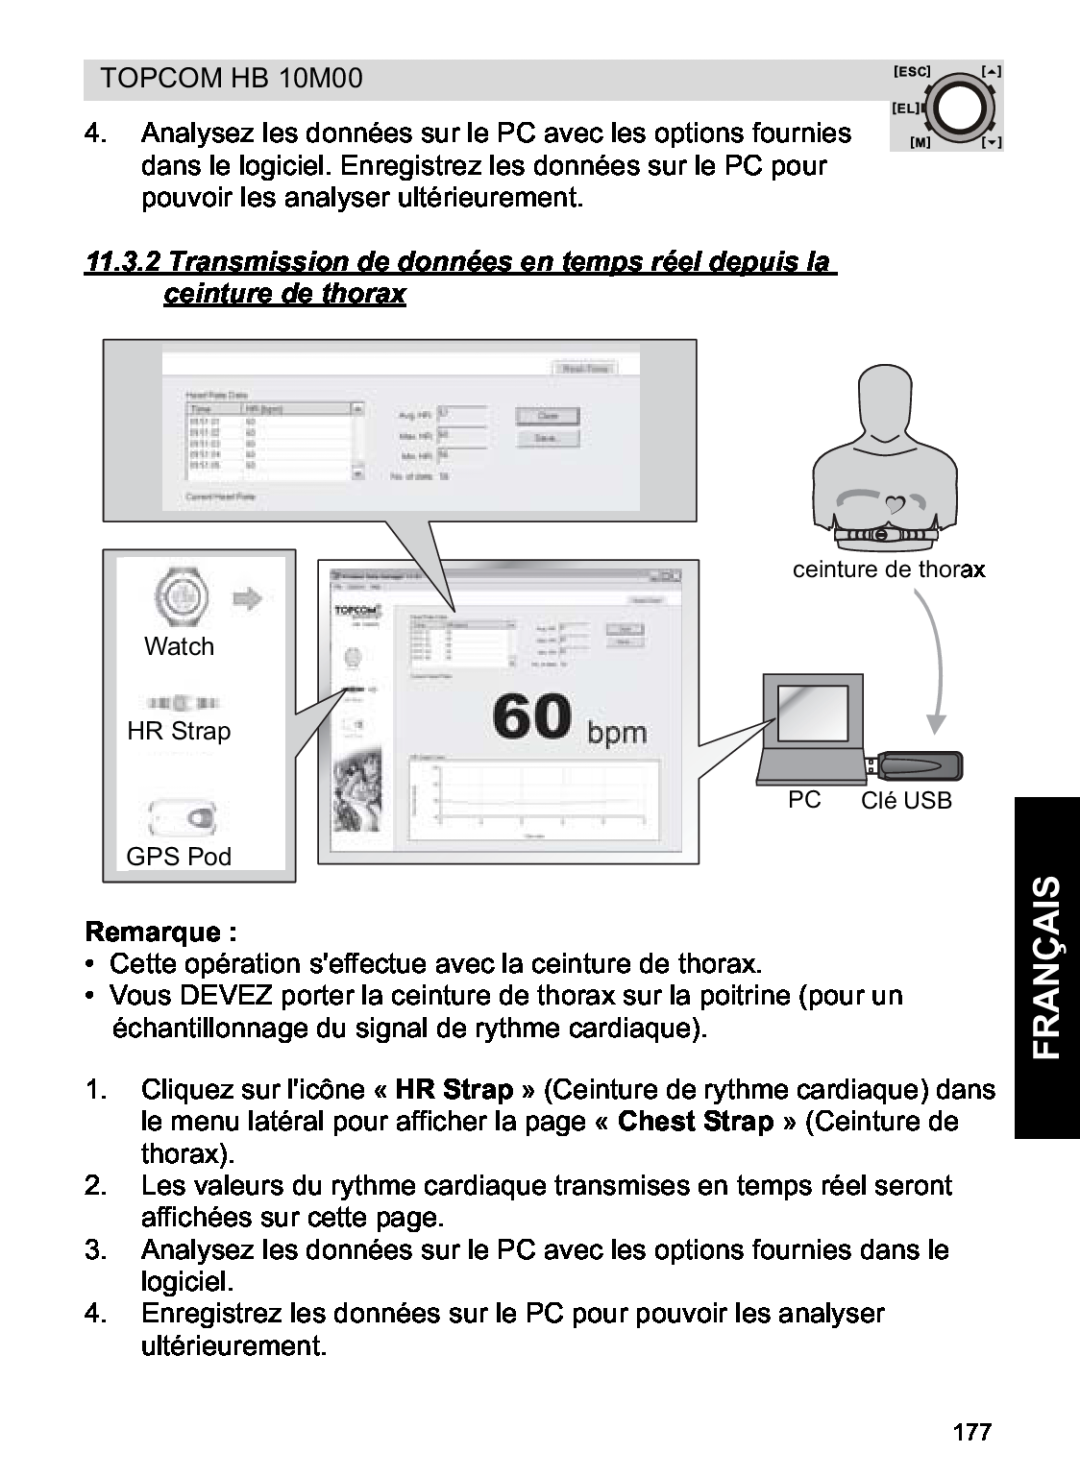 Topcom HB 10M00 manual Français, Remarque, ceinture de thorax, PC Clé USB 